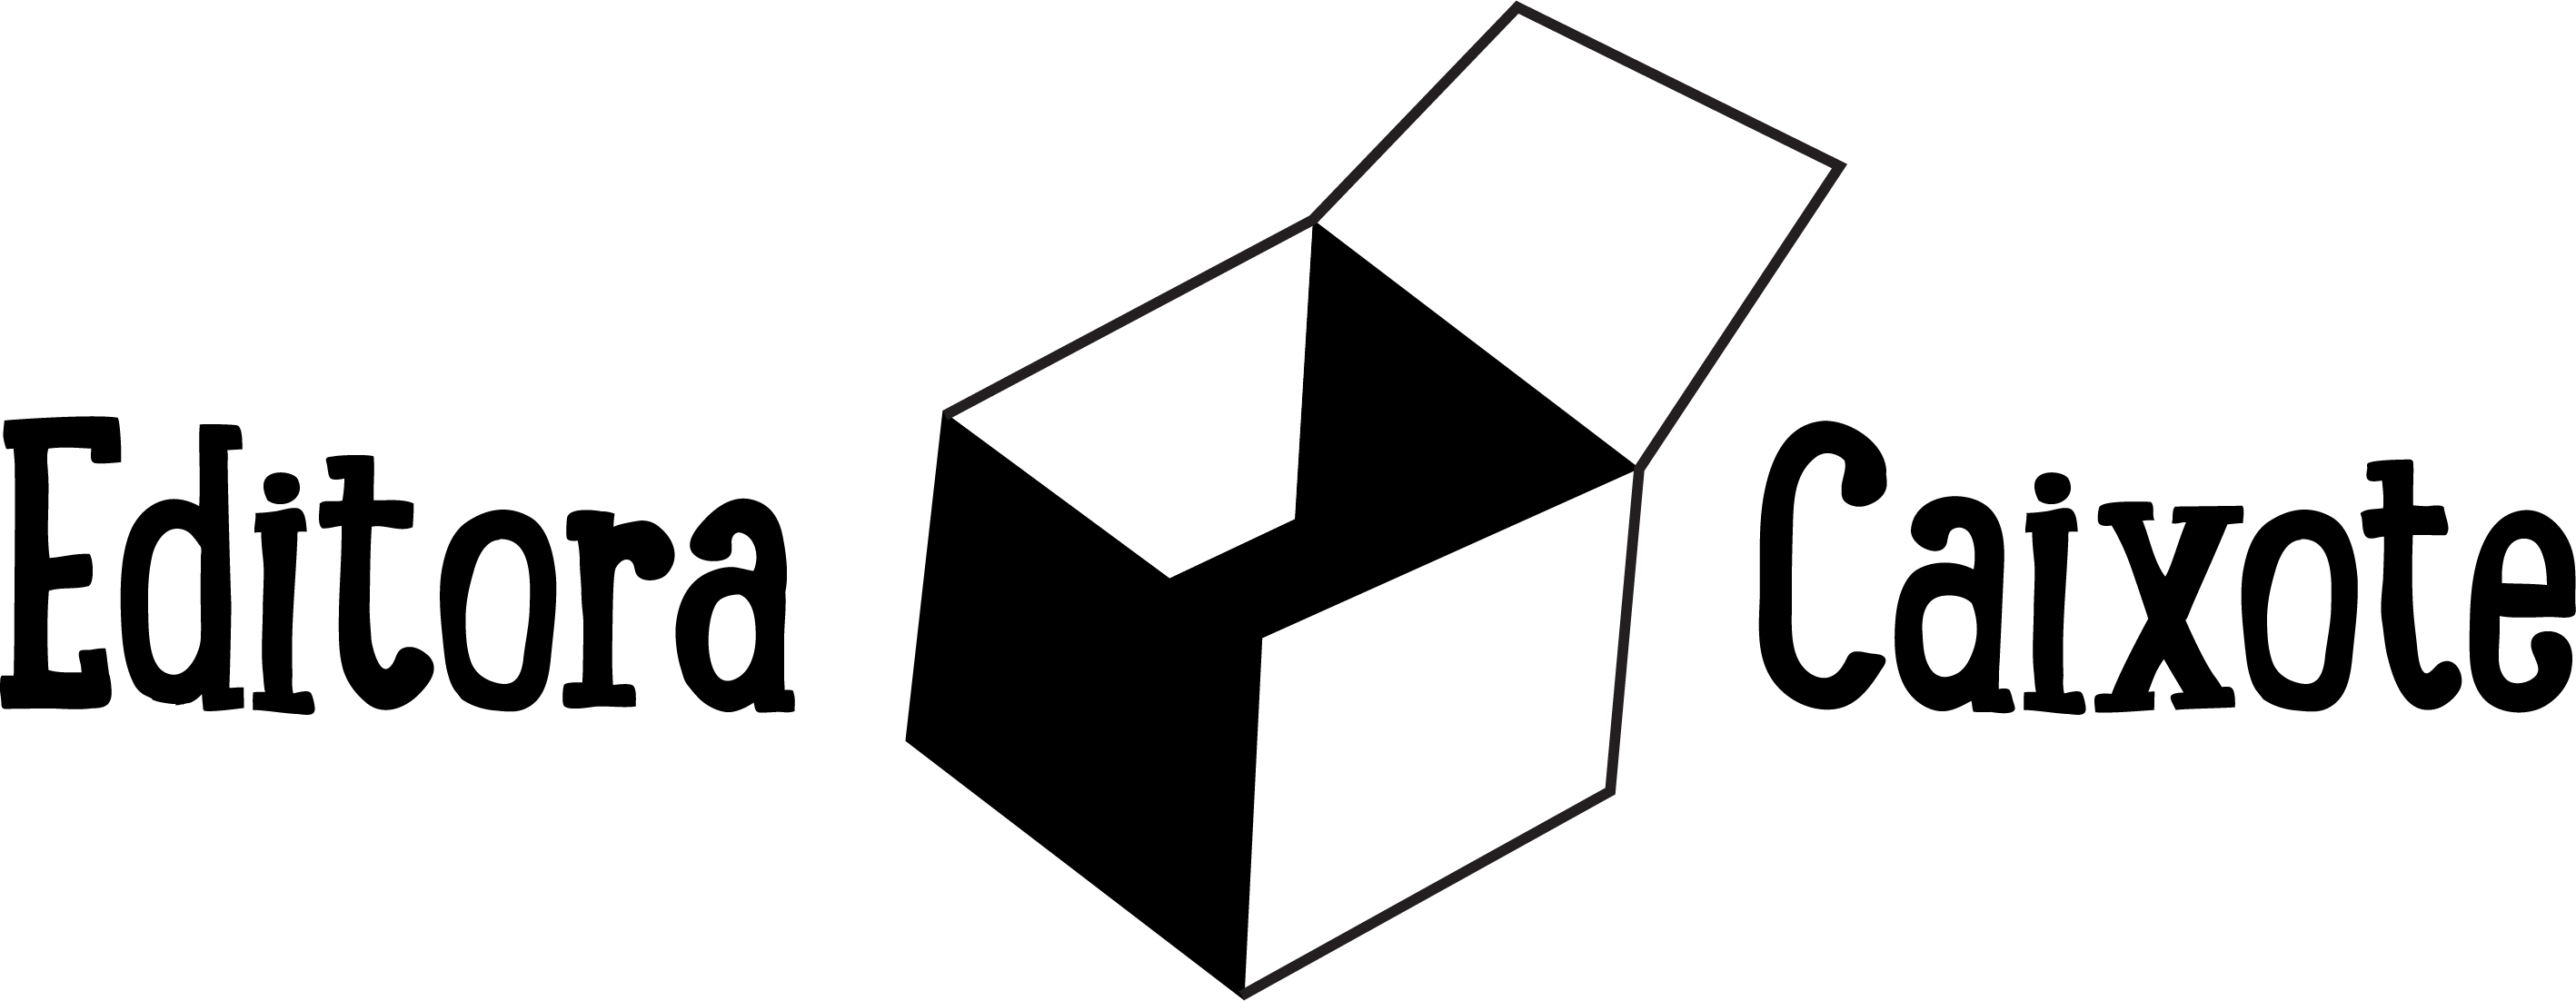 logo CAIXOTE EDITORA